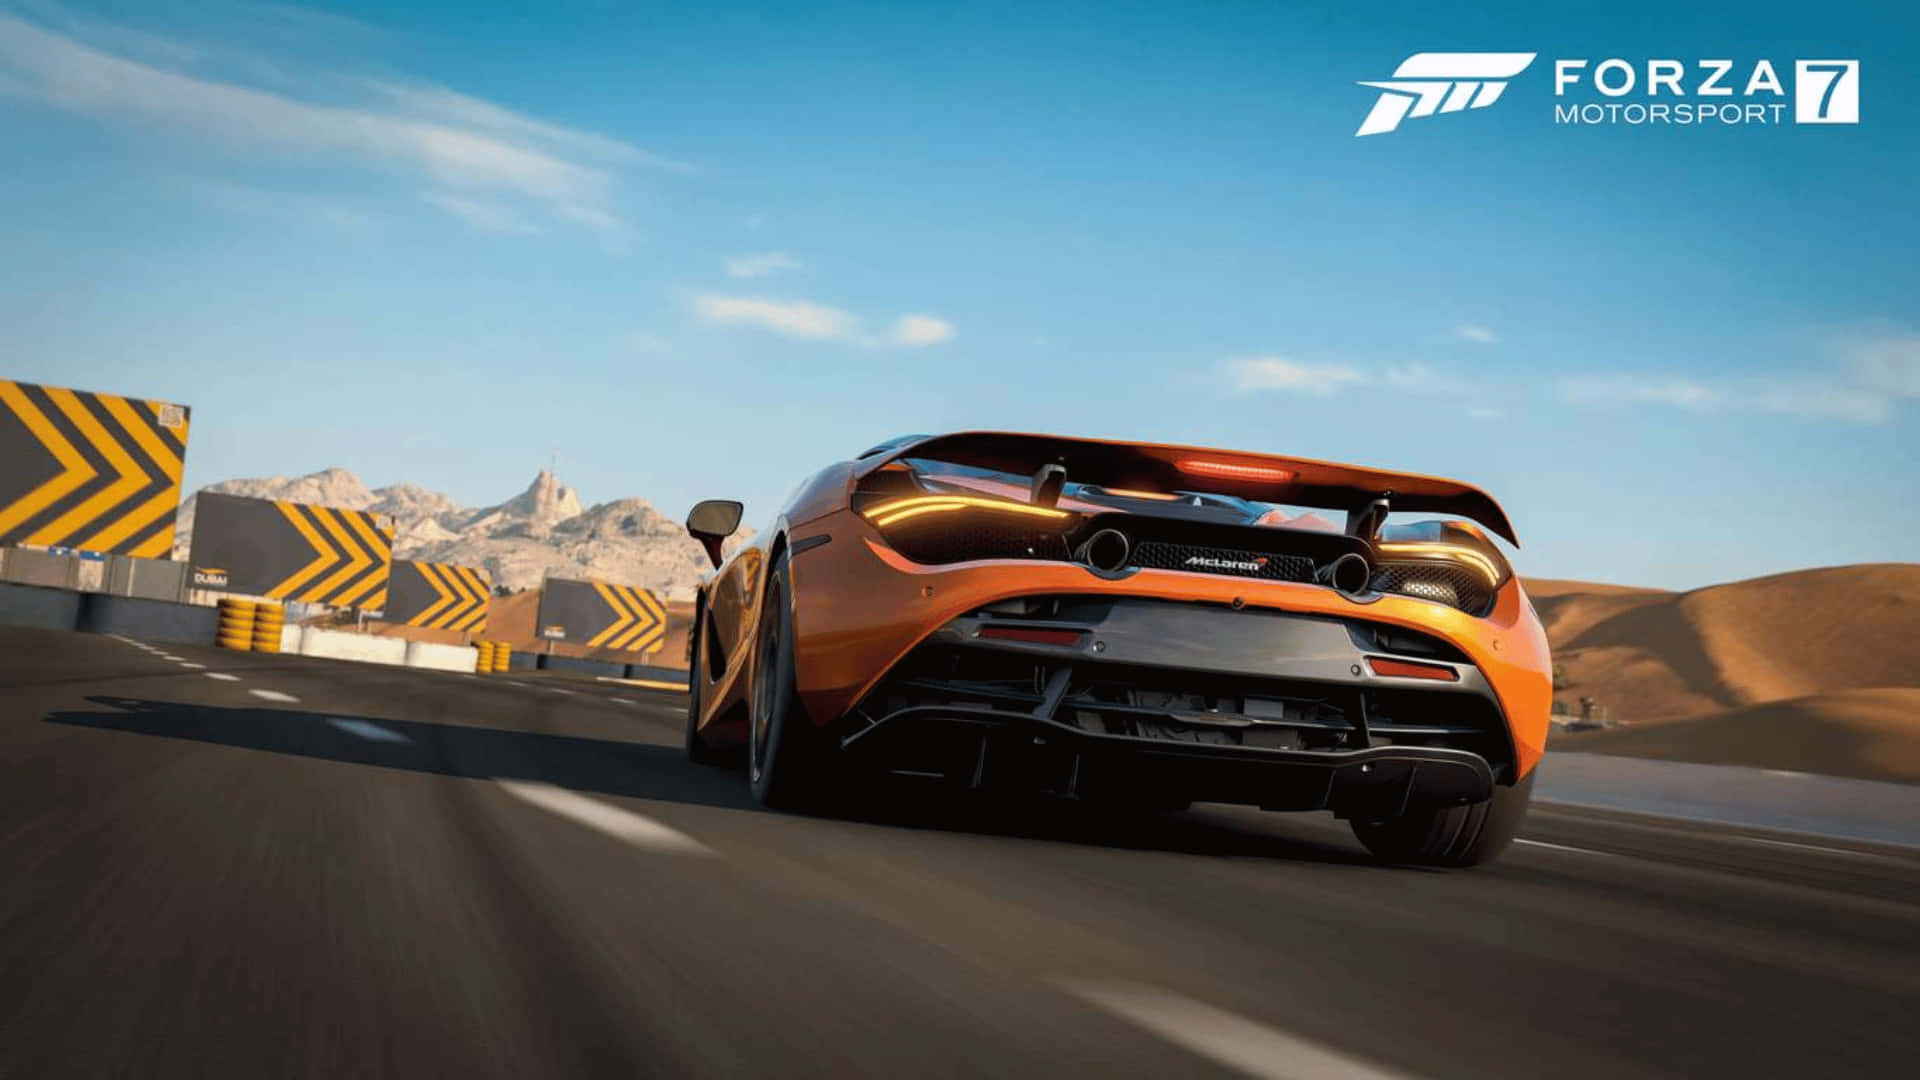 Prendiil Volante Di Una Macchina Da Corsa Ad Alte Prestazioni In Forza Motorsport 7